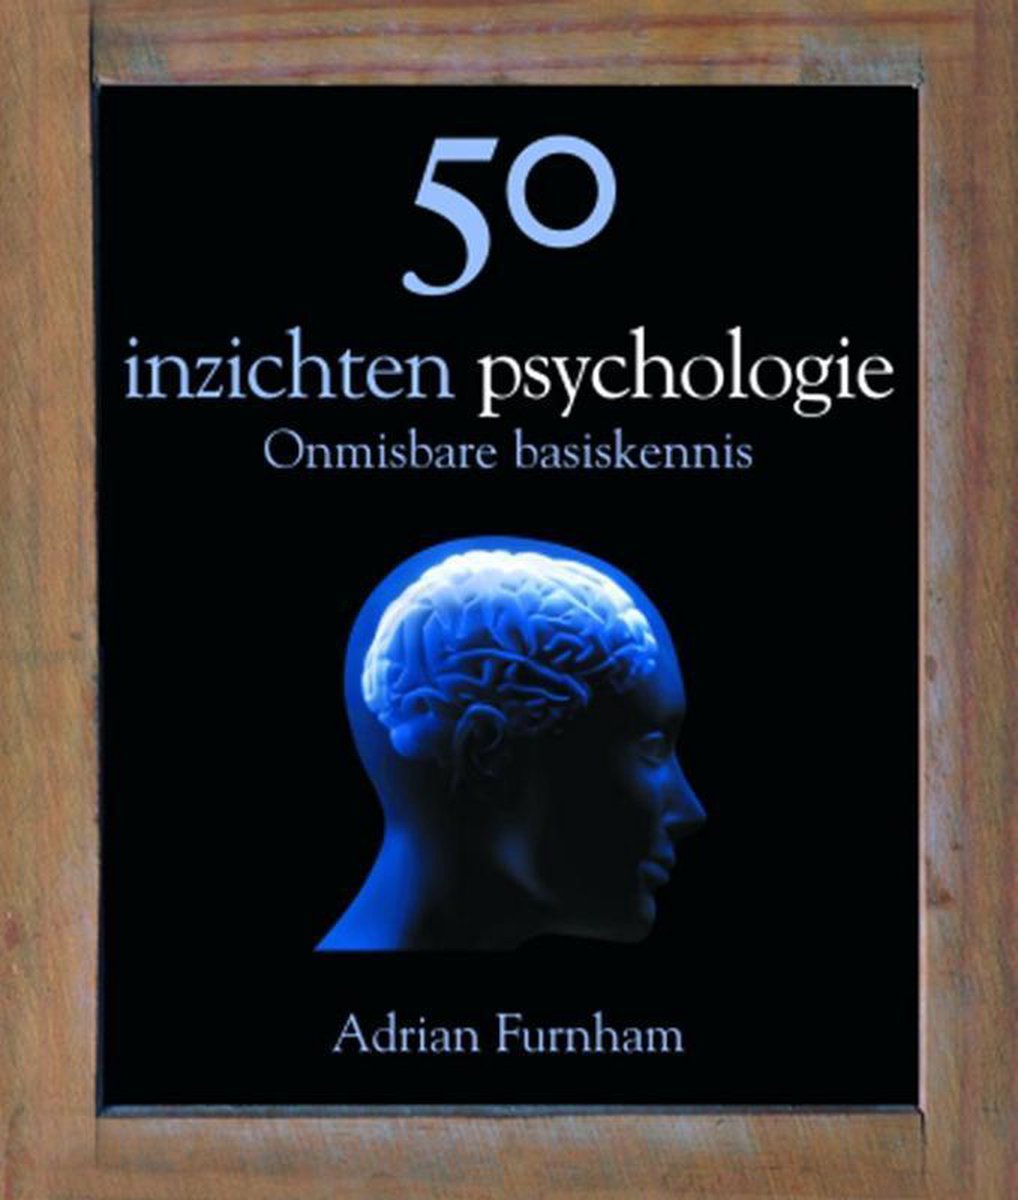 50 inzichten psychologie - Adrian Furnham